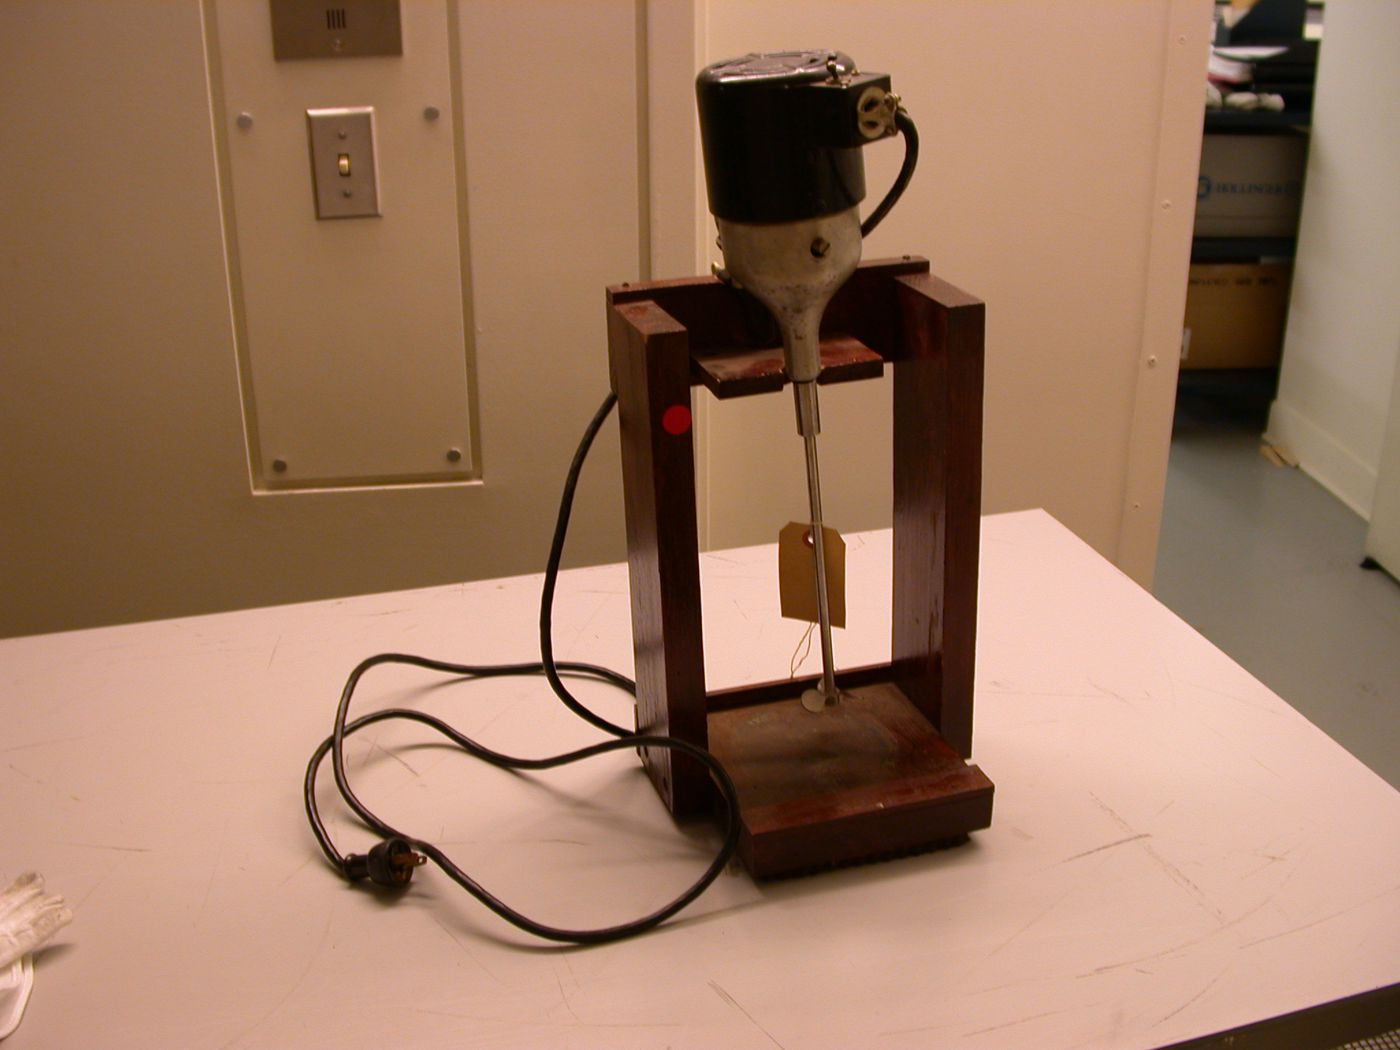 Mélangeur électrique (electric mixer) fabriqué par Eastman Kodak Company sur un support en bois de fabrication artisanale